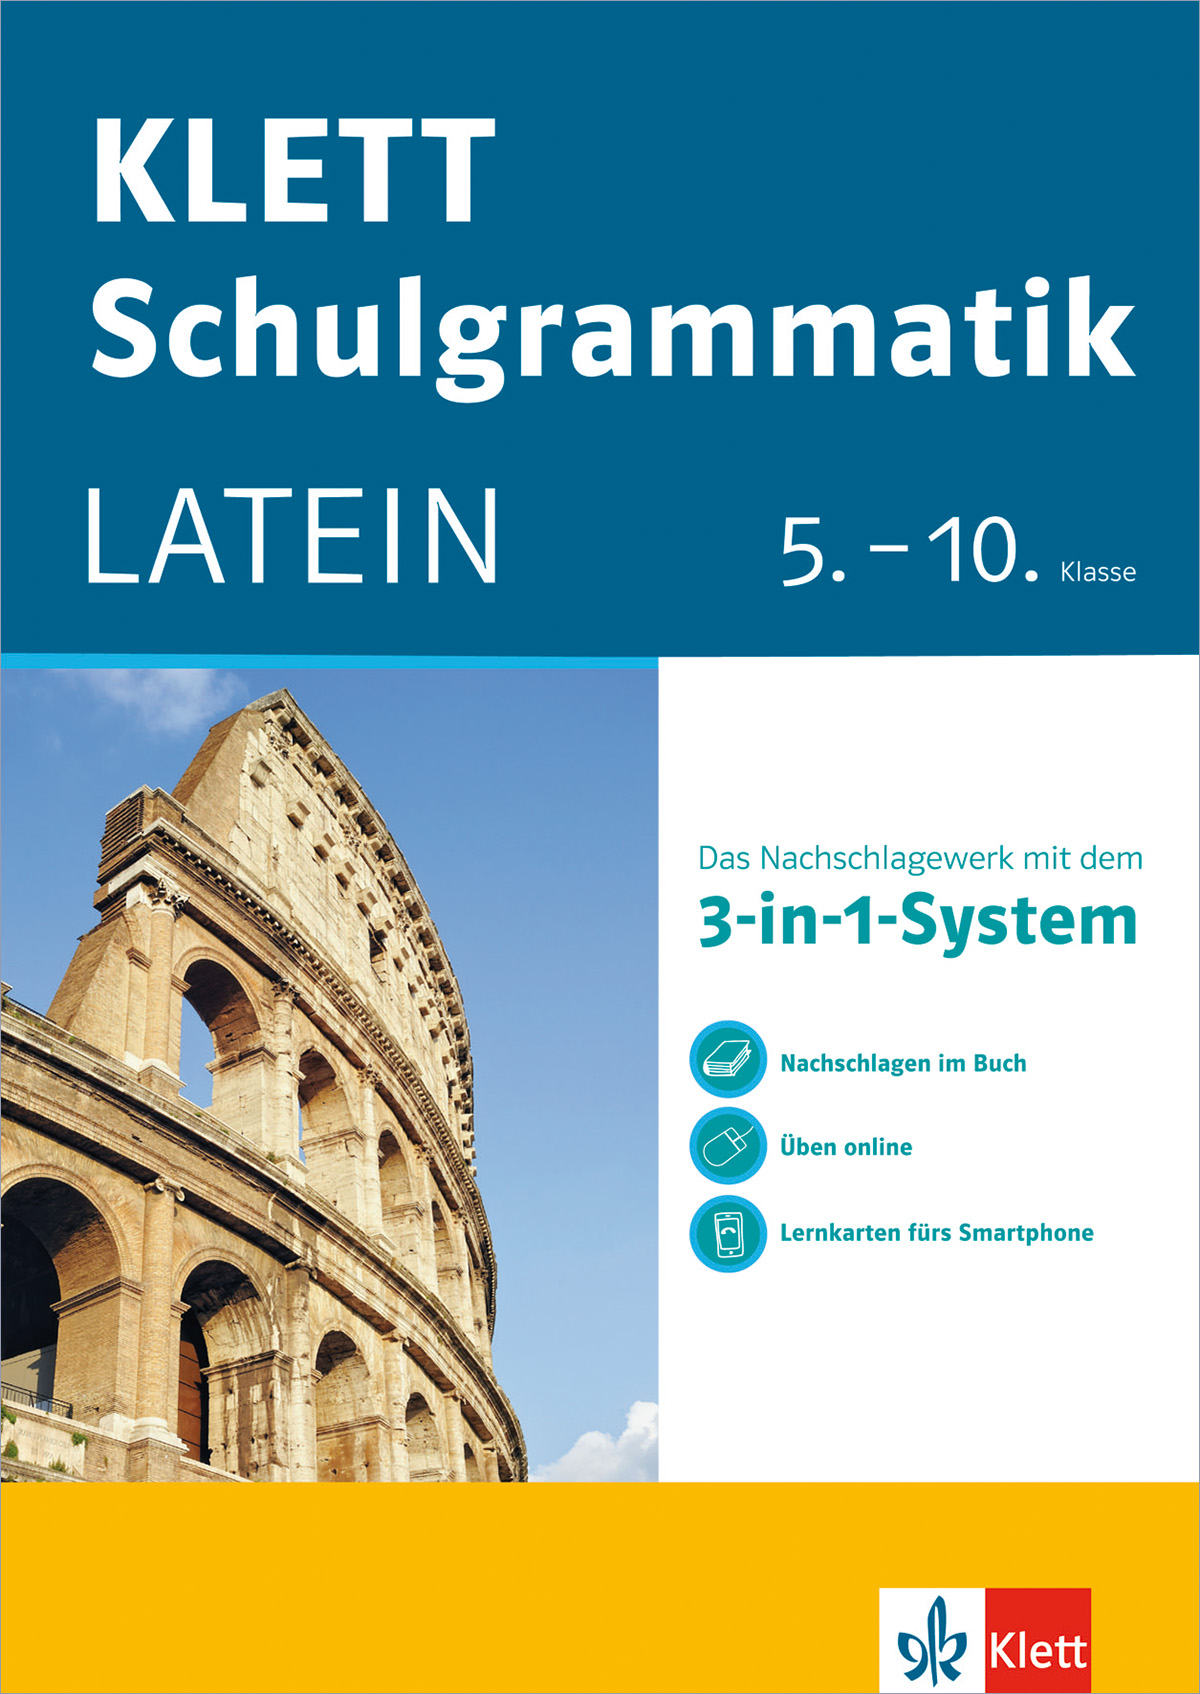 Klett Schulgrammatik Latein 5. - 10. Klasse